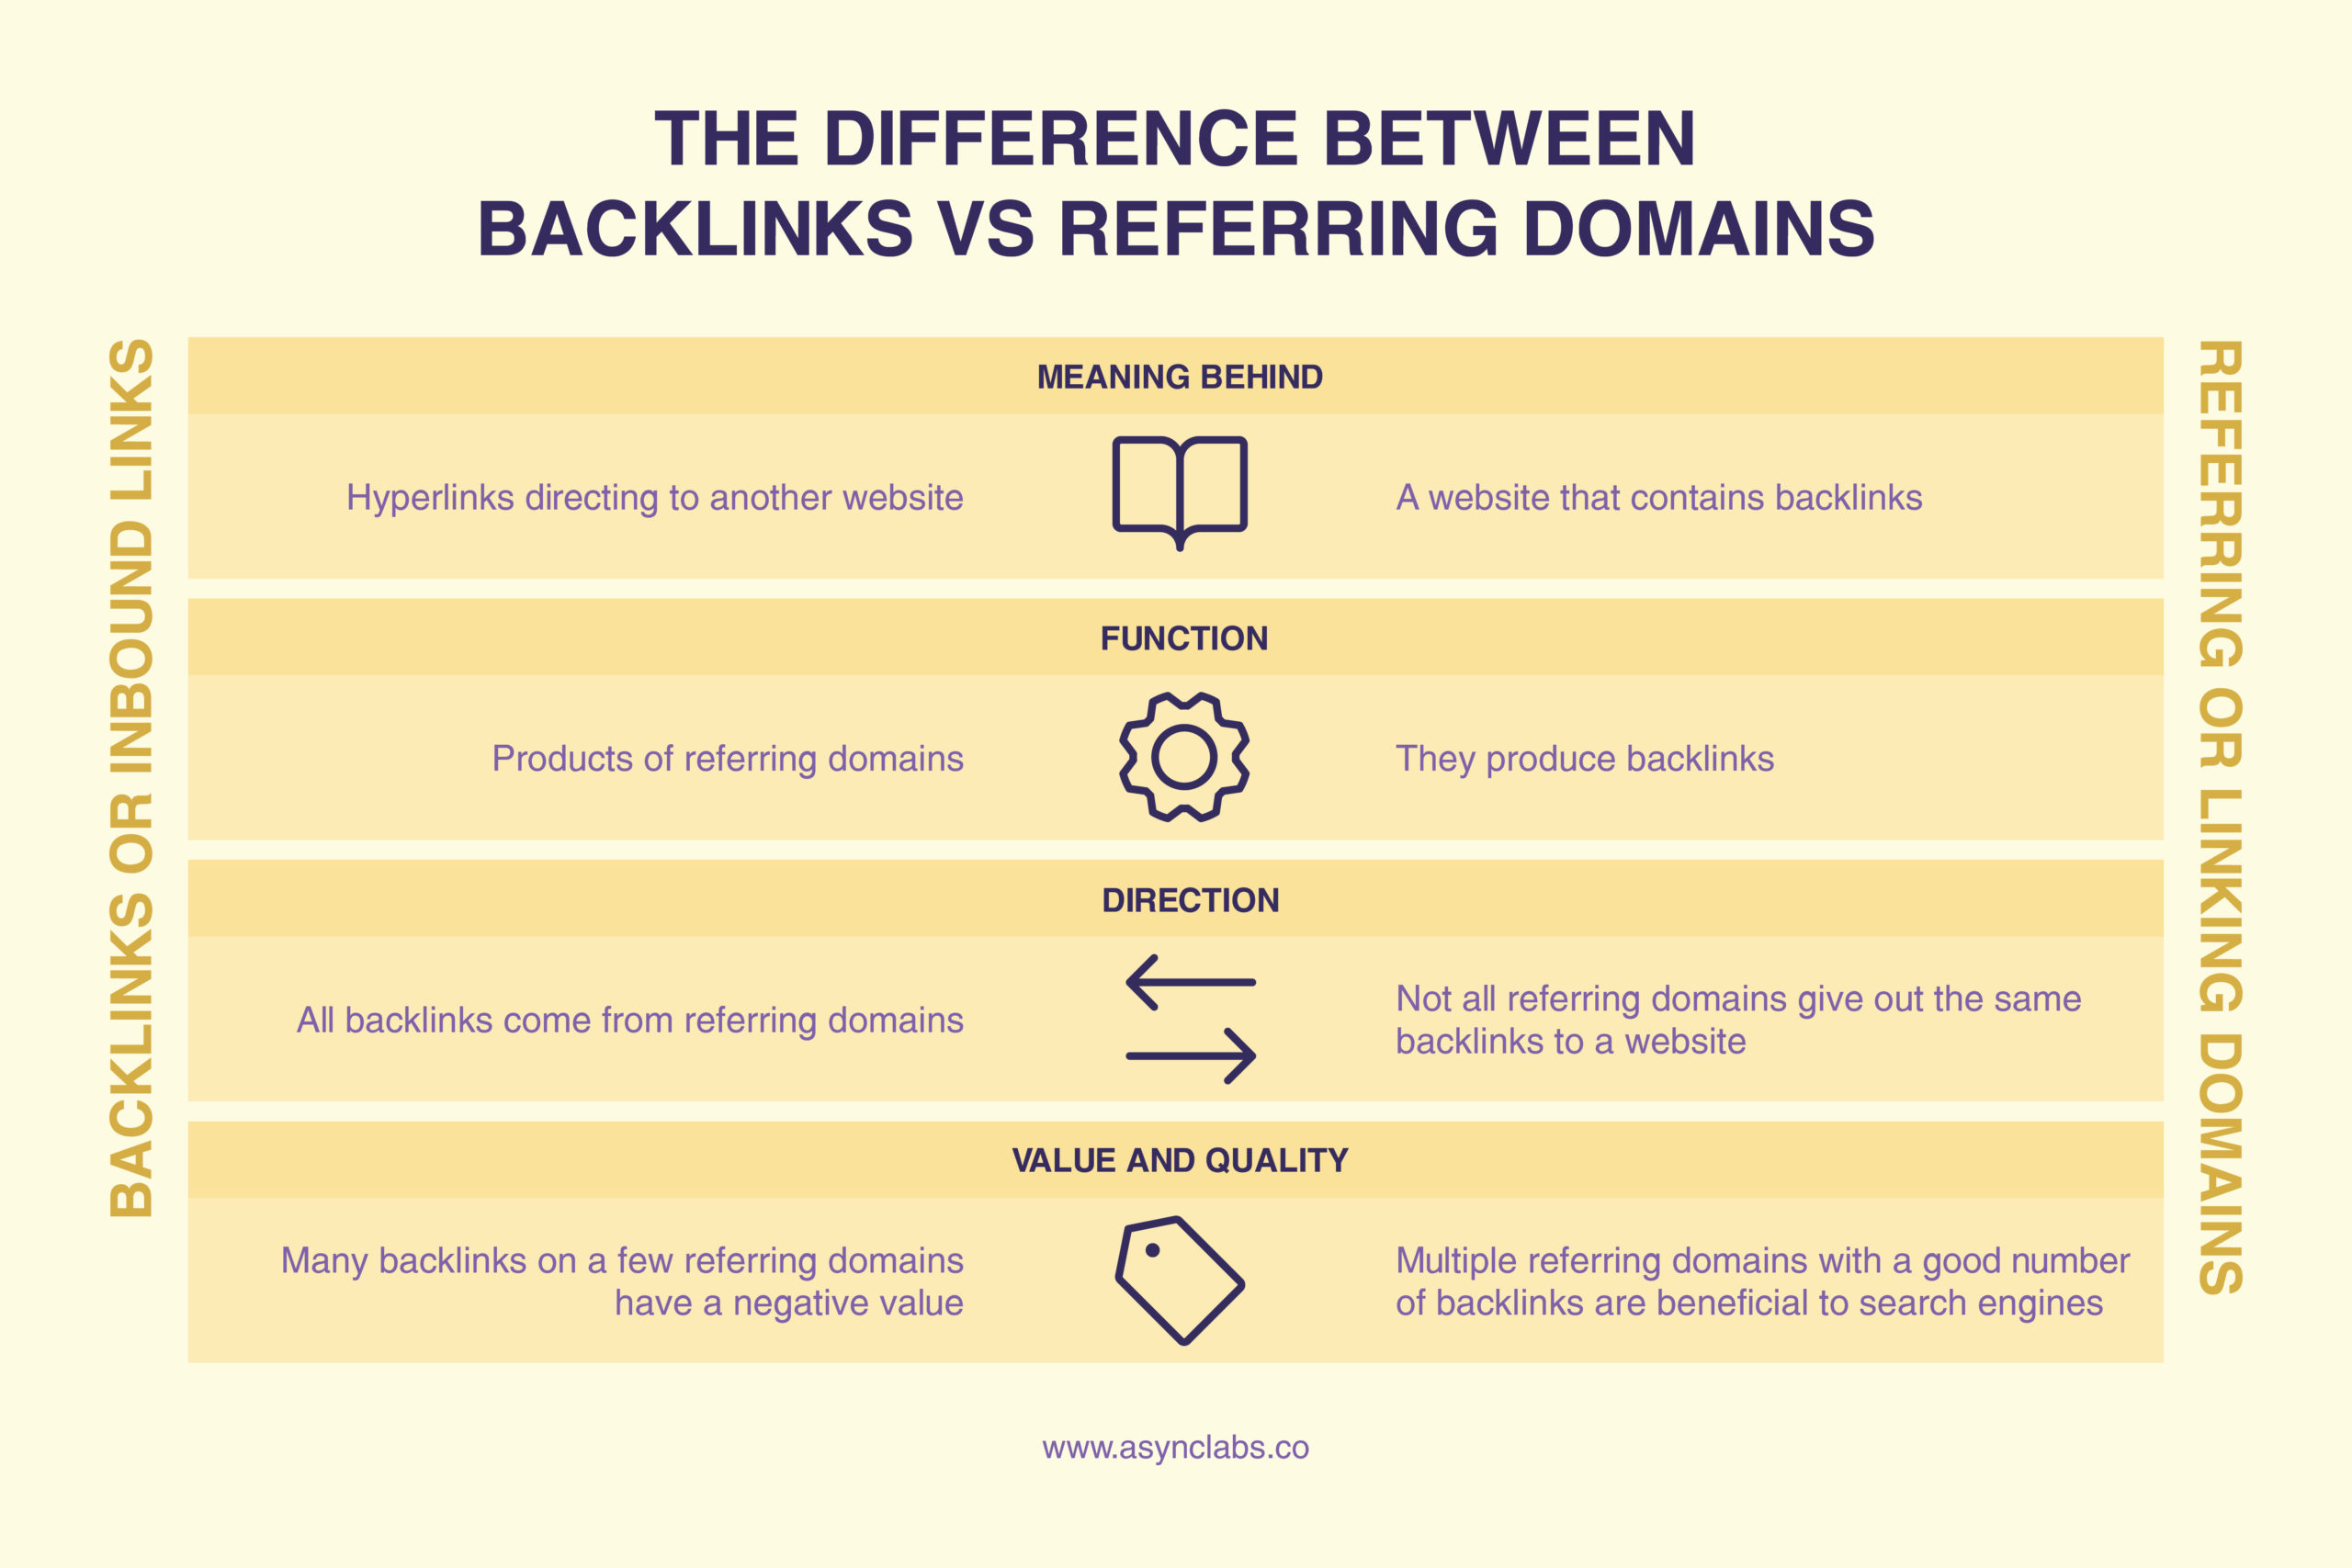 referring domains vs backlinks